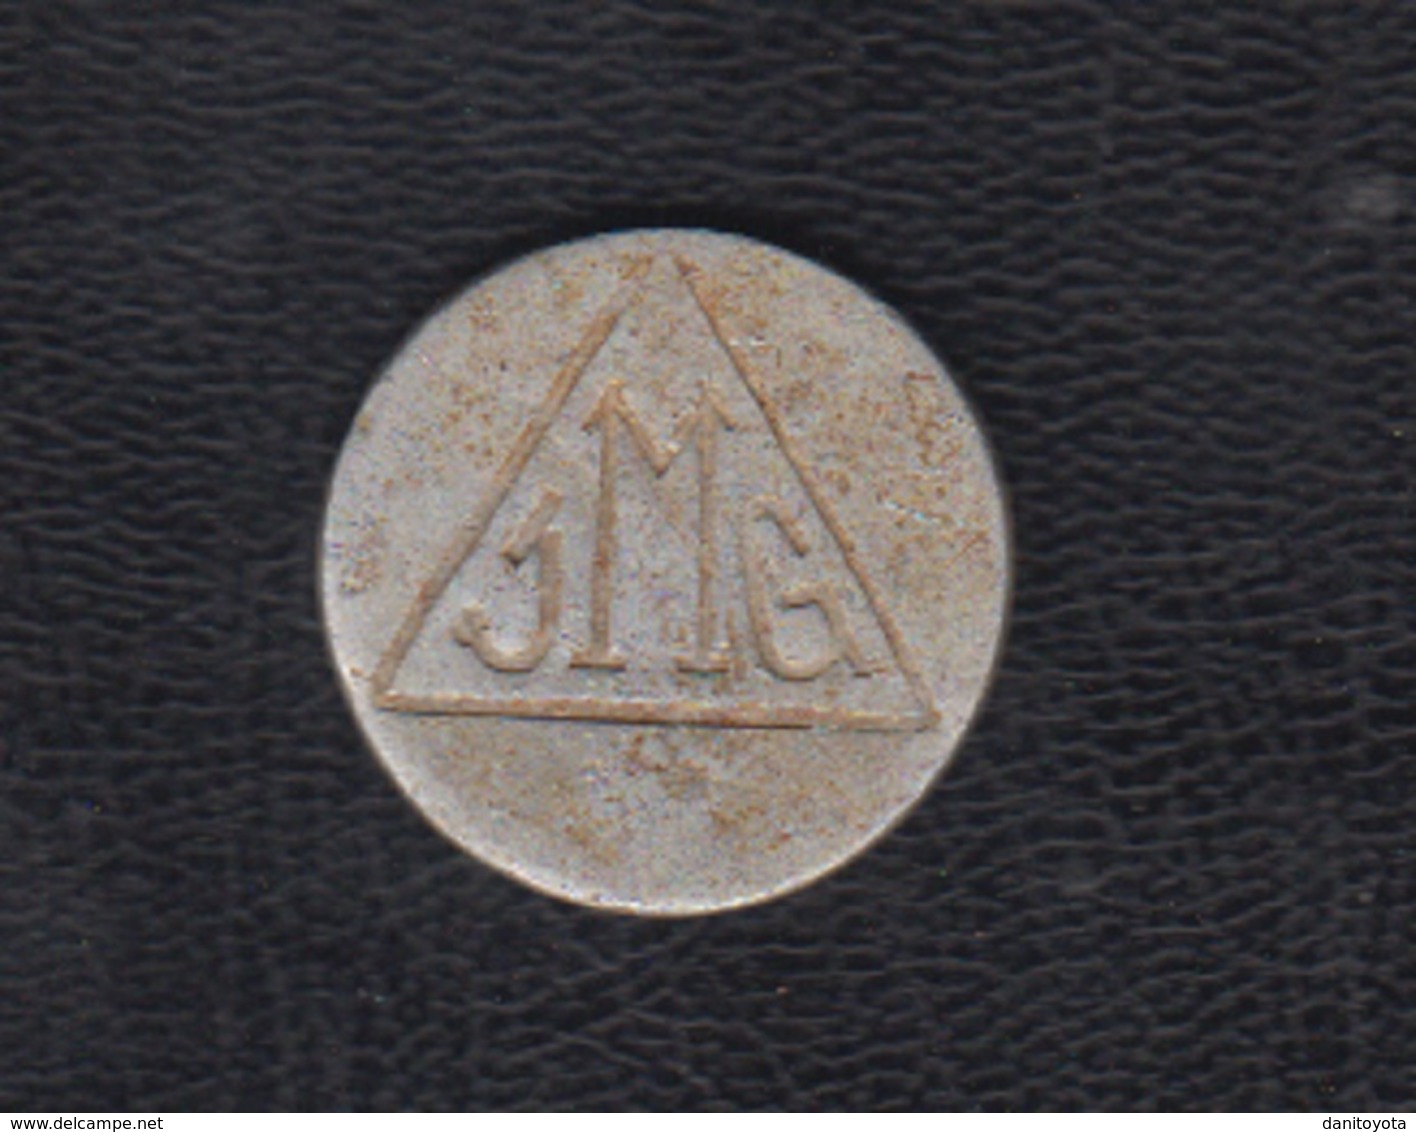 ISLA CRISTINA.  25 CENTIMOS JMG.  FABRICA SALAZONES -  Monnaies De Nécessité